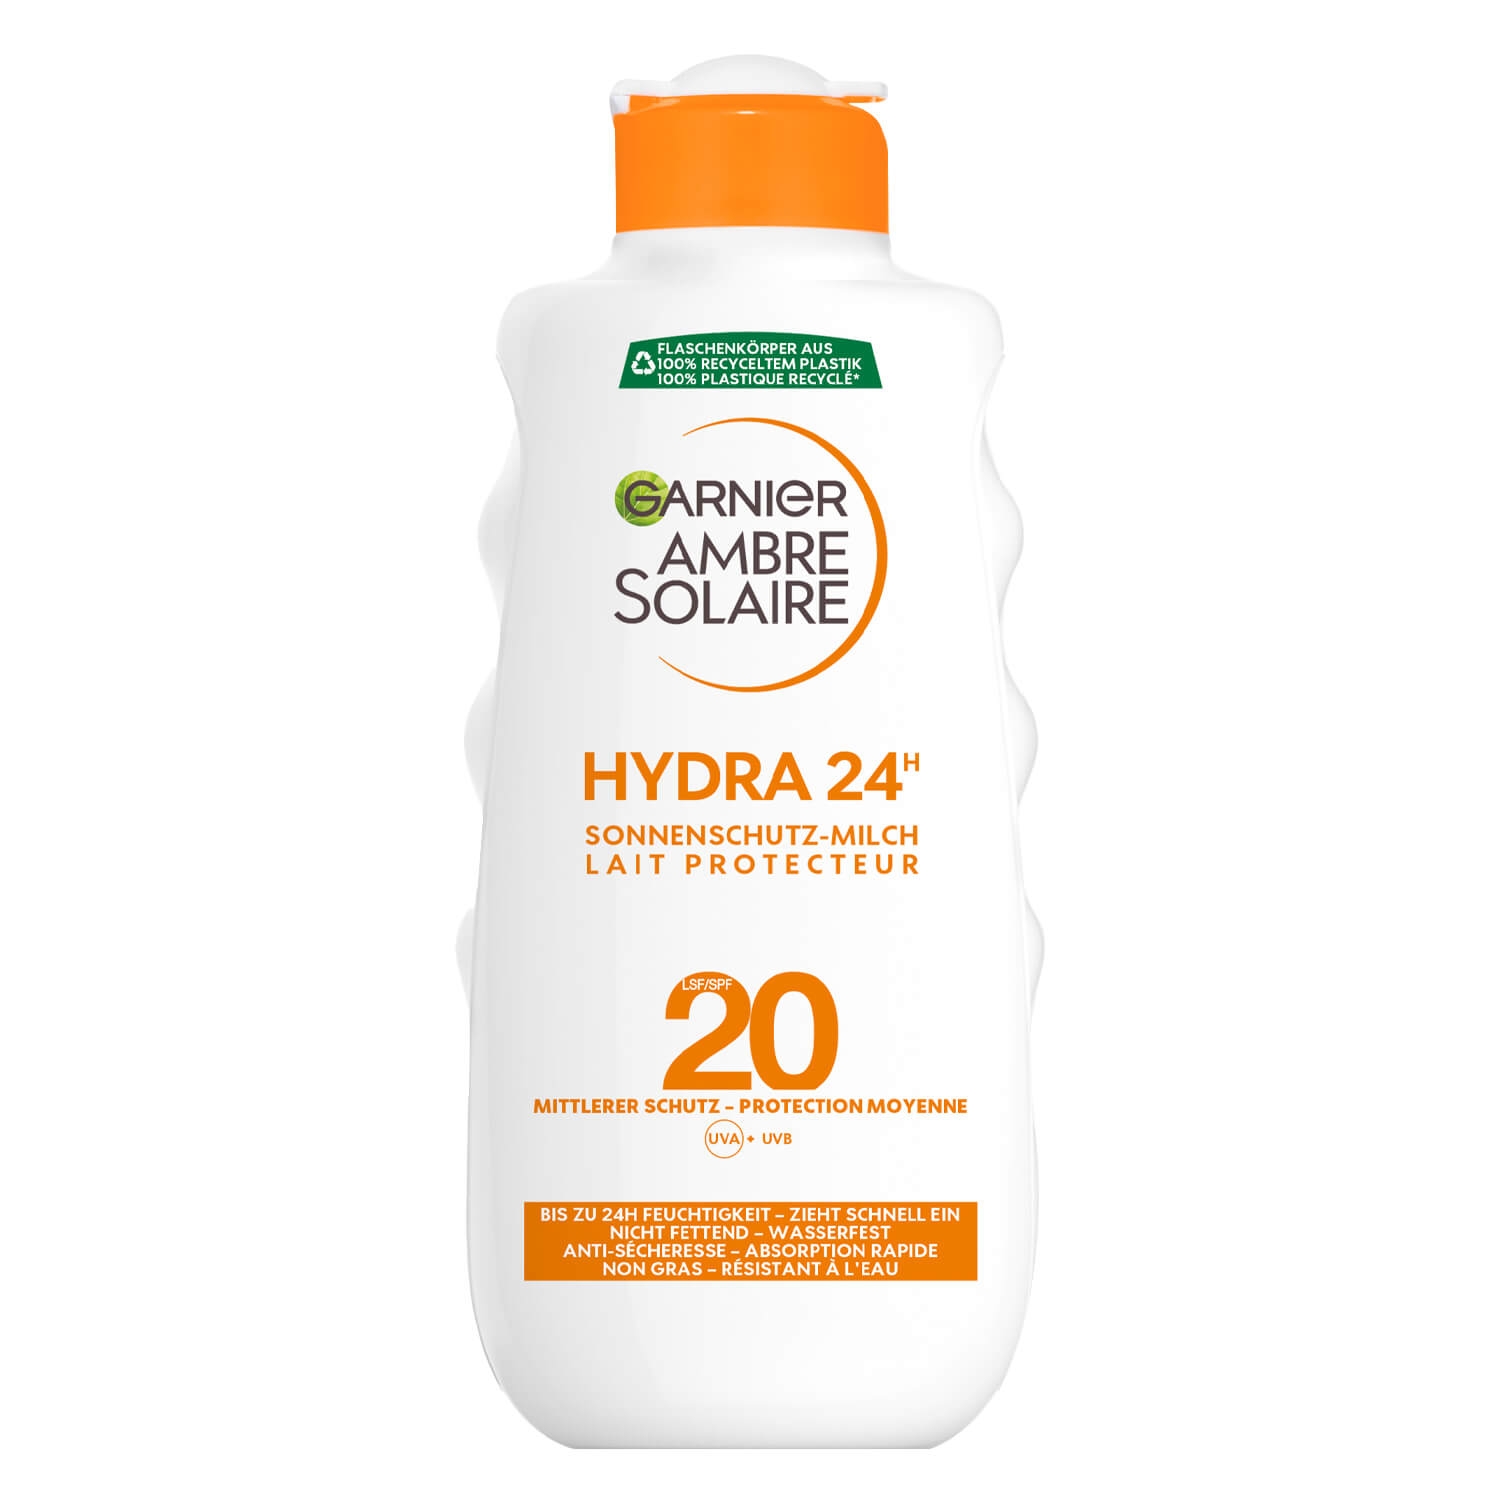 Produktbild von Ambre Solaire - Sonnenschutz-Milch LSF20 Hydra 24h